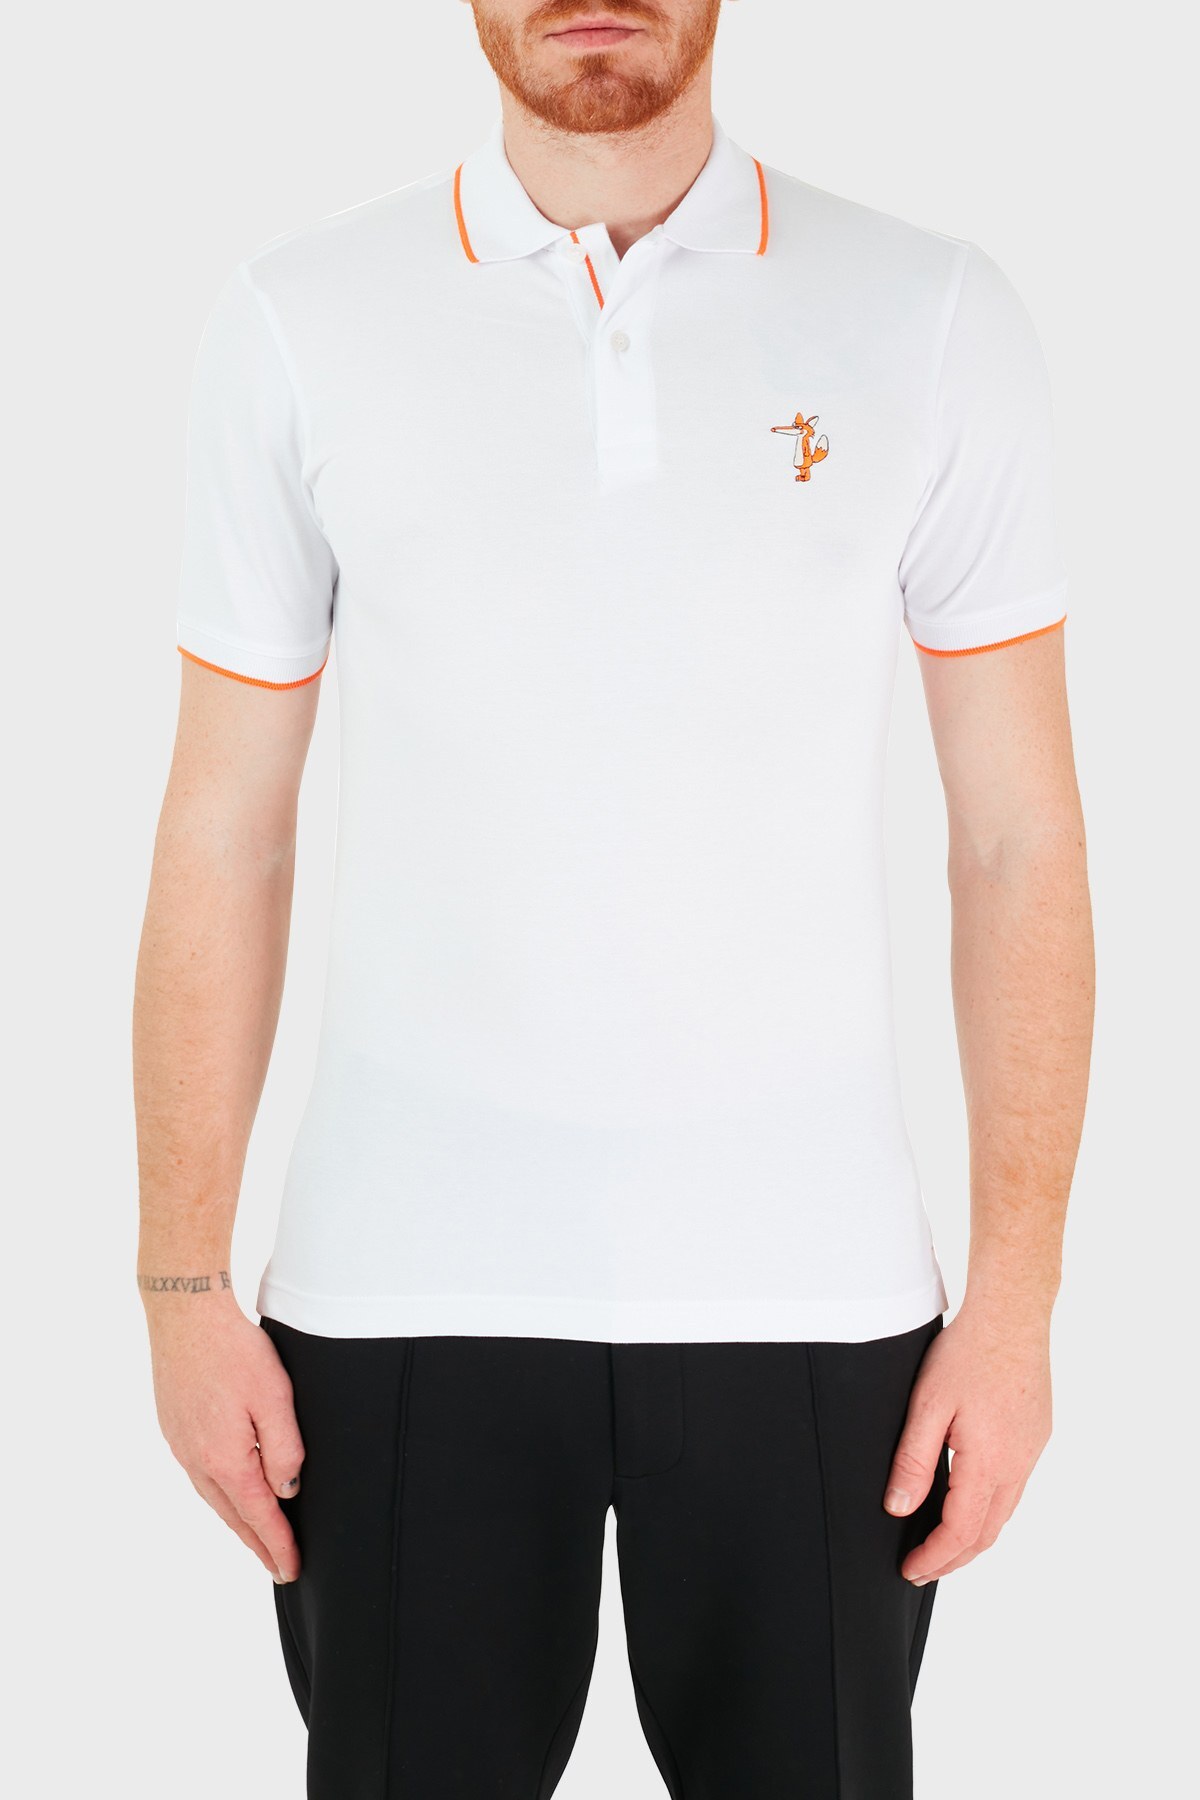 Ruck & Maul Pamuklu Düğmeli T Shirt Erkek Polo RMM01000713 BEYAZ